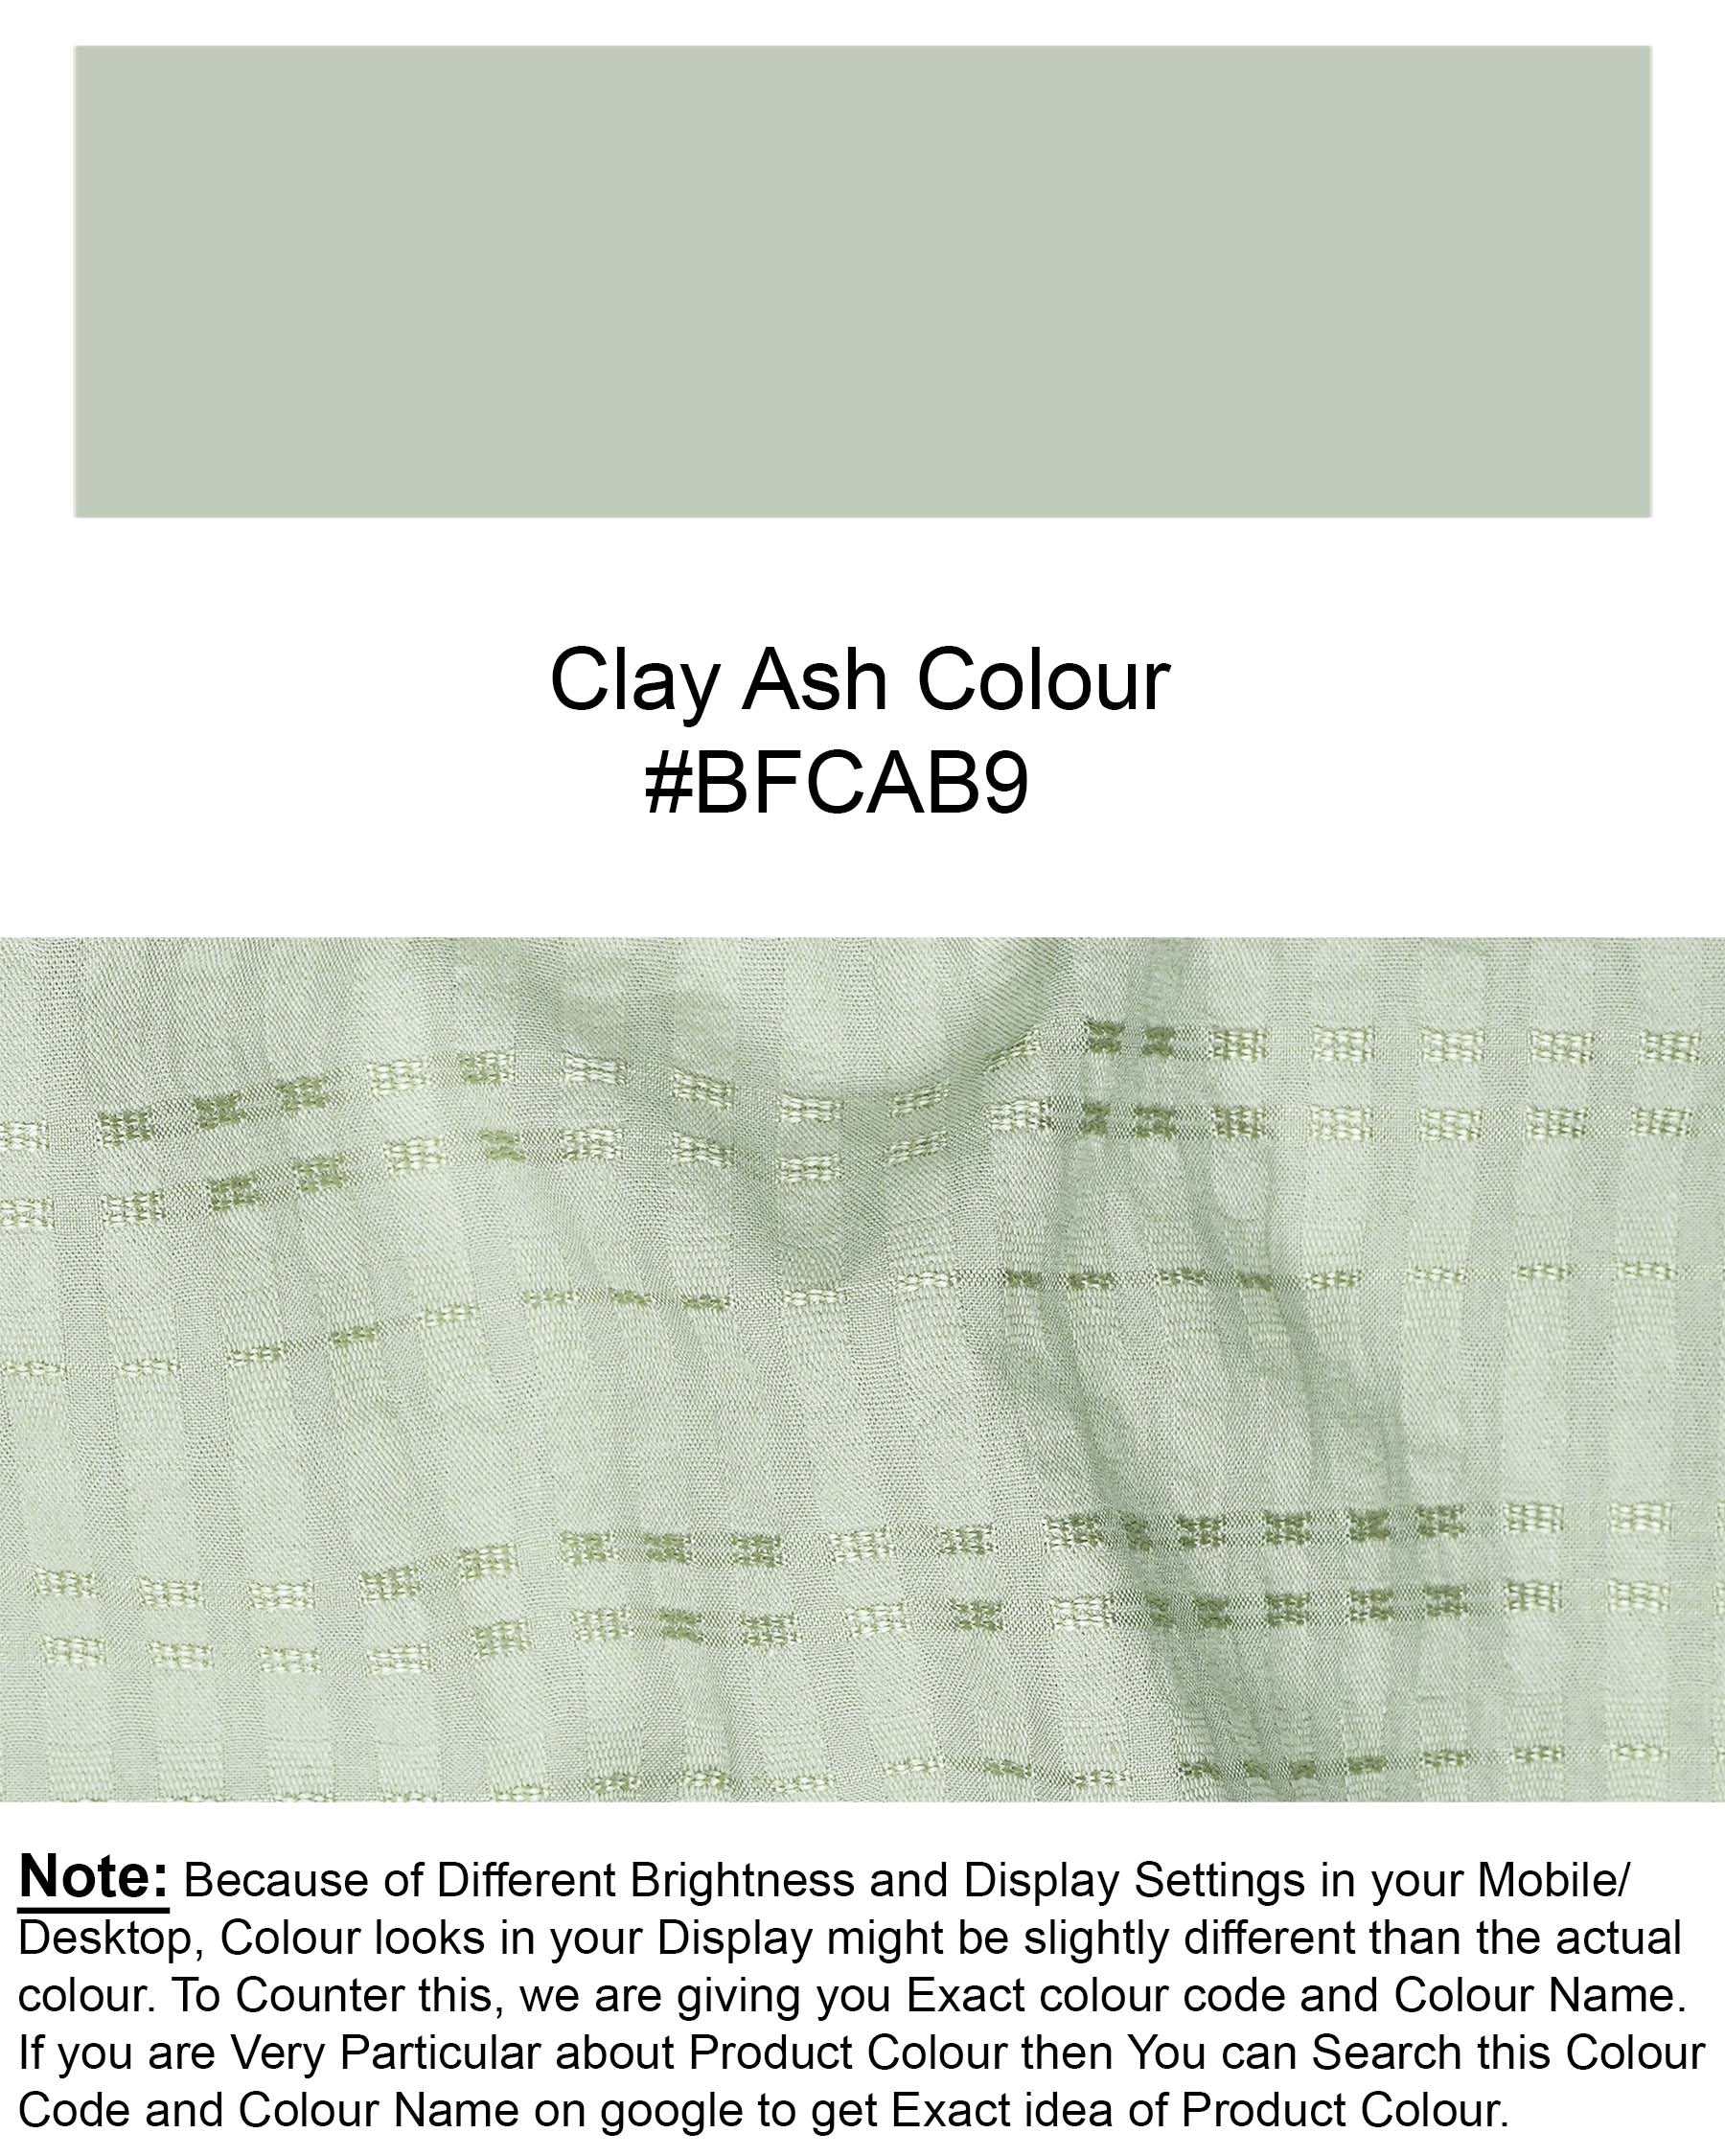 Clay Ash Green Heavyweight Striped Dobby Textured Premium Giza Cotton Kurta Shirt 7684-KS-38, 7684-KS-H-38, 7684-KS-39, 7684-KS-H-39, 7684-KS-40, 7684-KS-H-40, 7684-KS-42, 7684-KS-H-42, 7684-KS-44, 7684-KS-H-44, 7684-KS-46, 7684-KS-H-46, 7684-KS-48, 7684-KS-H-48, 7684-KS-50, 7684-KS-H-50, 7684-KS-52, 7684-KS-H-52